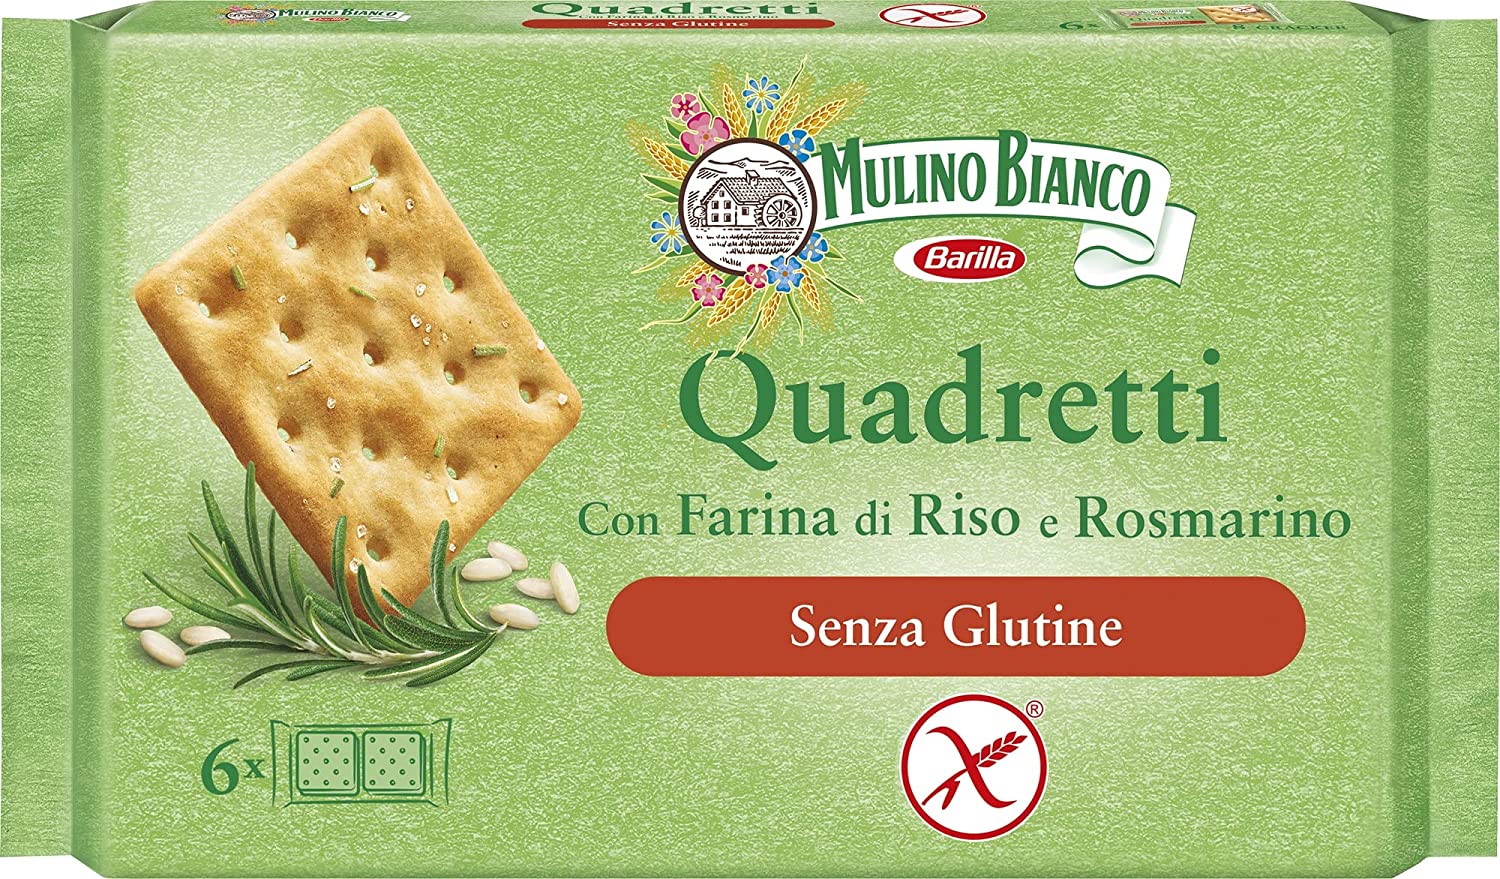 Mulino Bianco gluten-free crackers with rice and rosemary